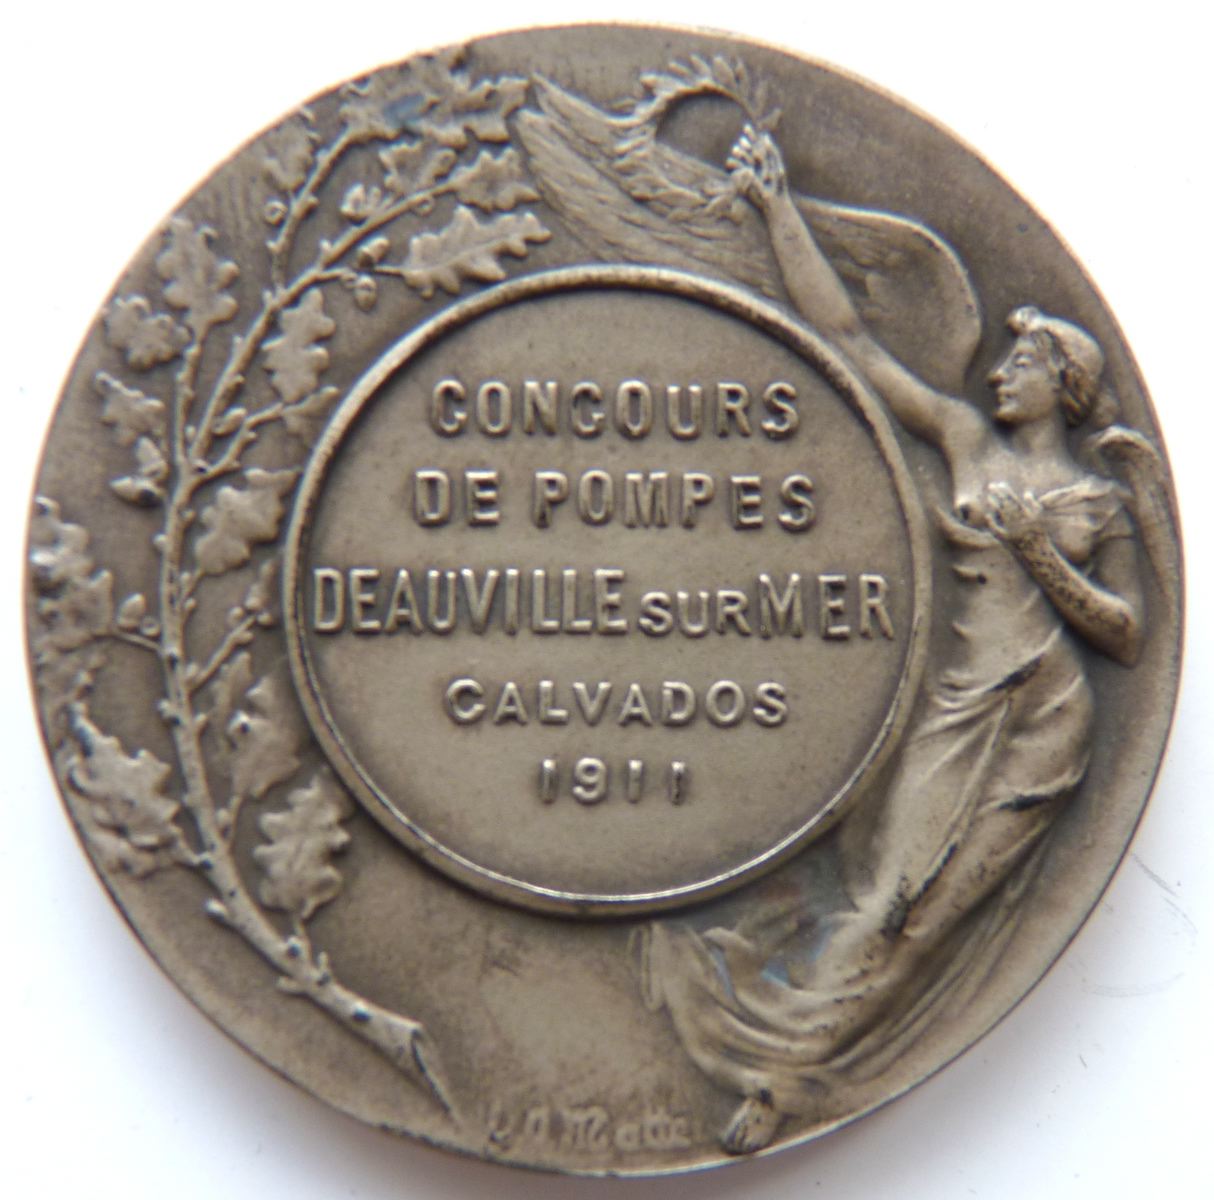 Concours de pompes - Deauville sur Mer - Calvados - 1911